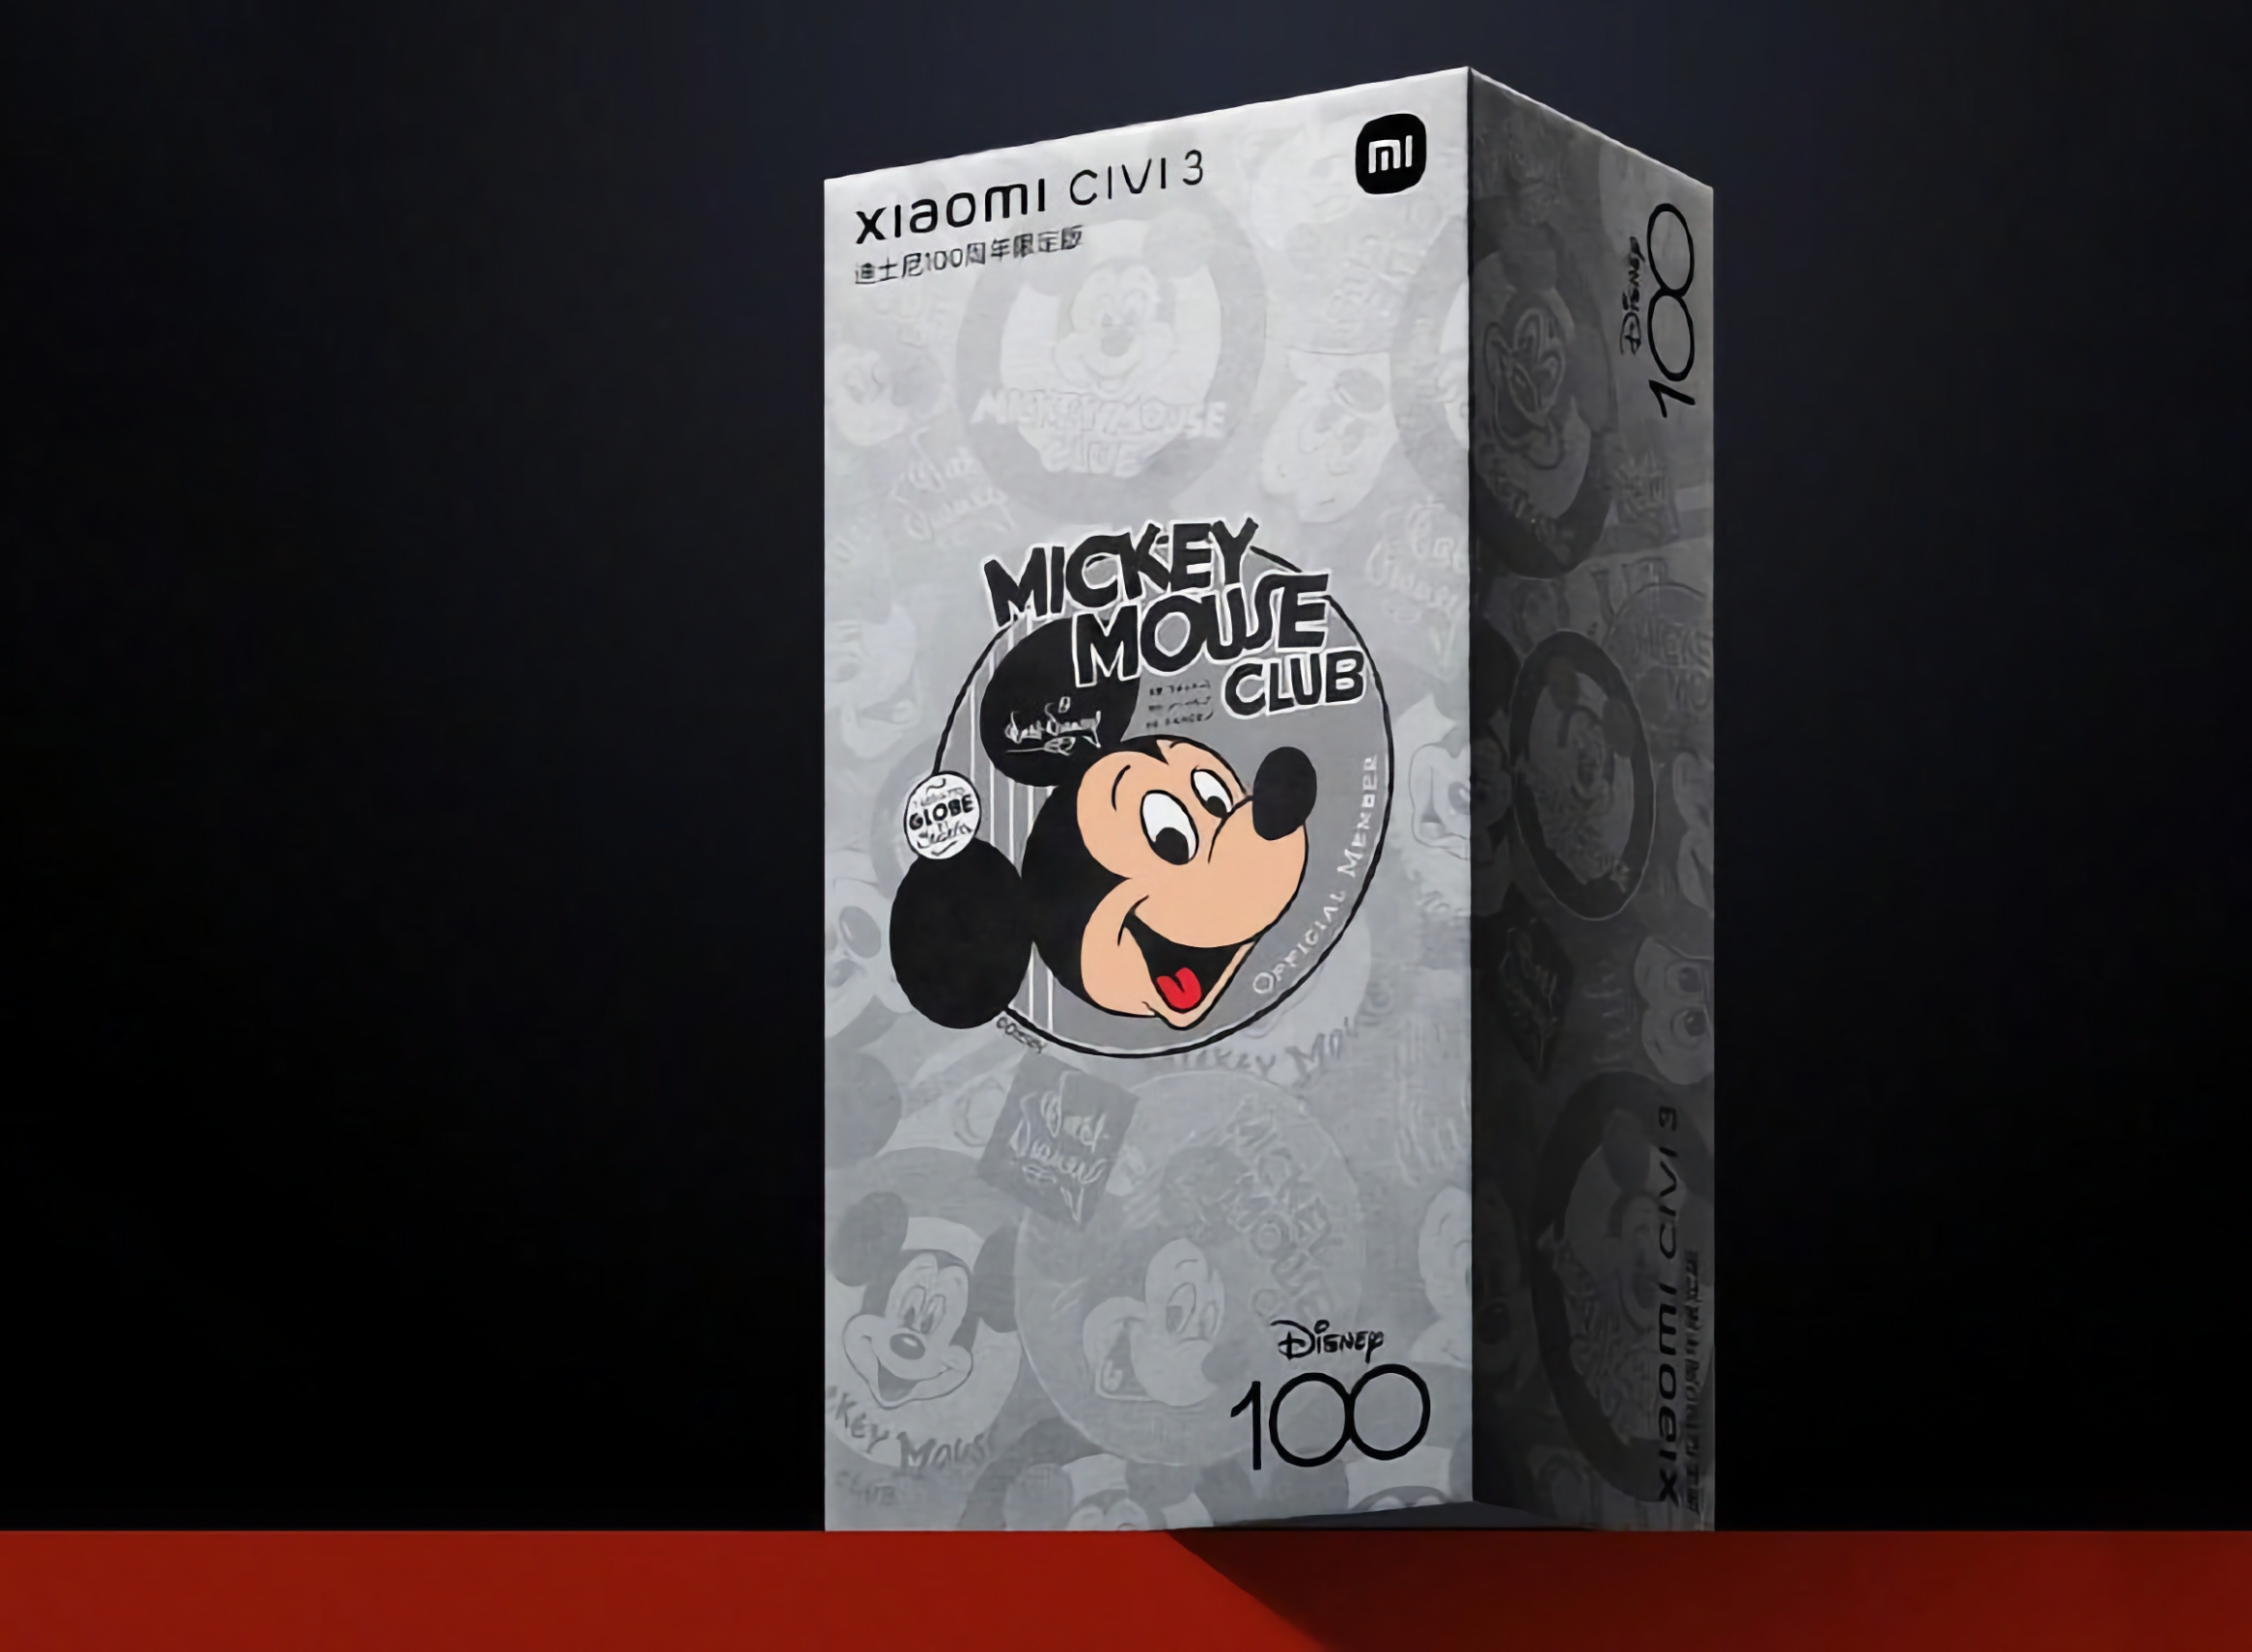 Xiaomi presentará en junio una versión especial del smartphone Civi 3 para conmemorar el centenario de Walt Disney Company